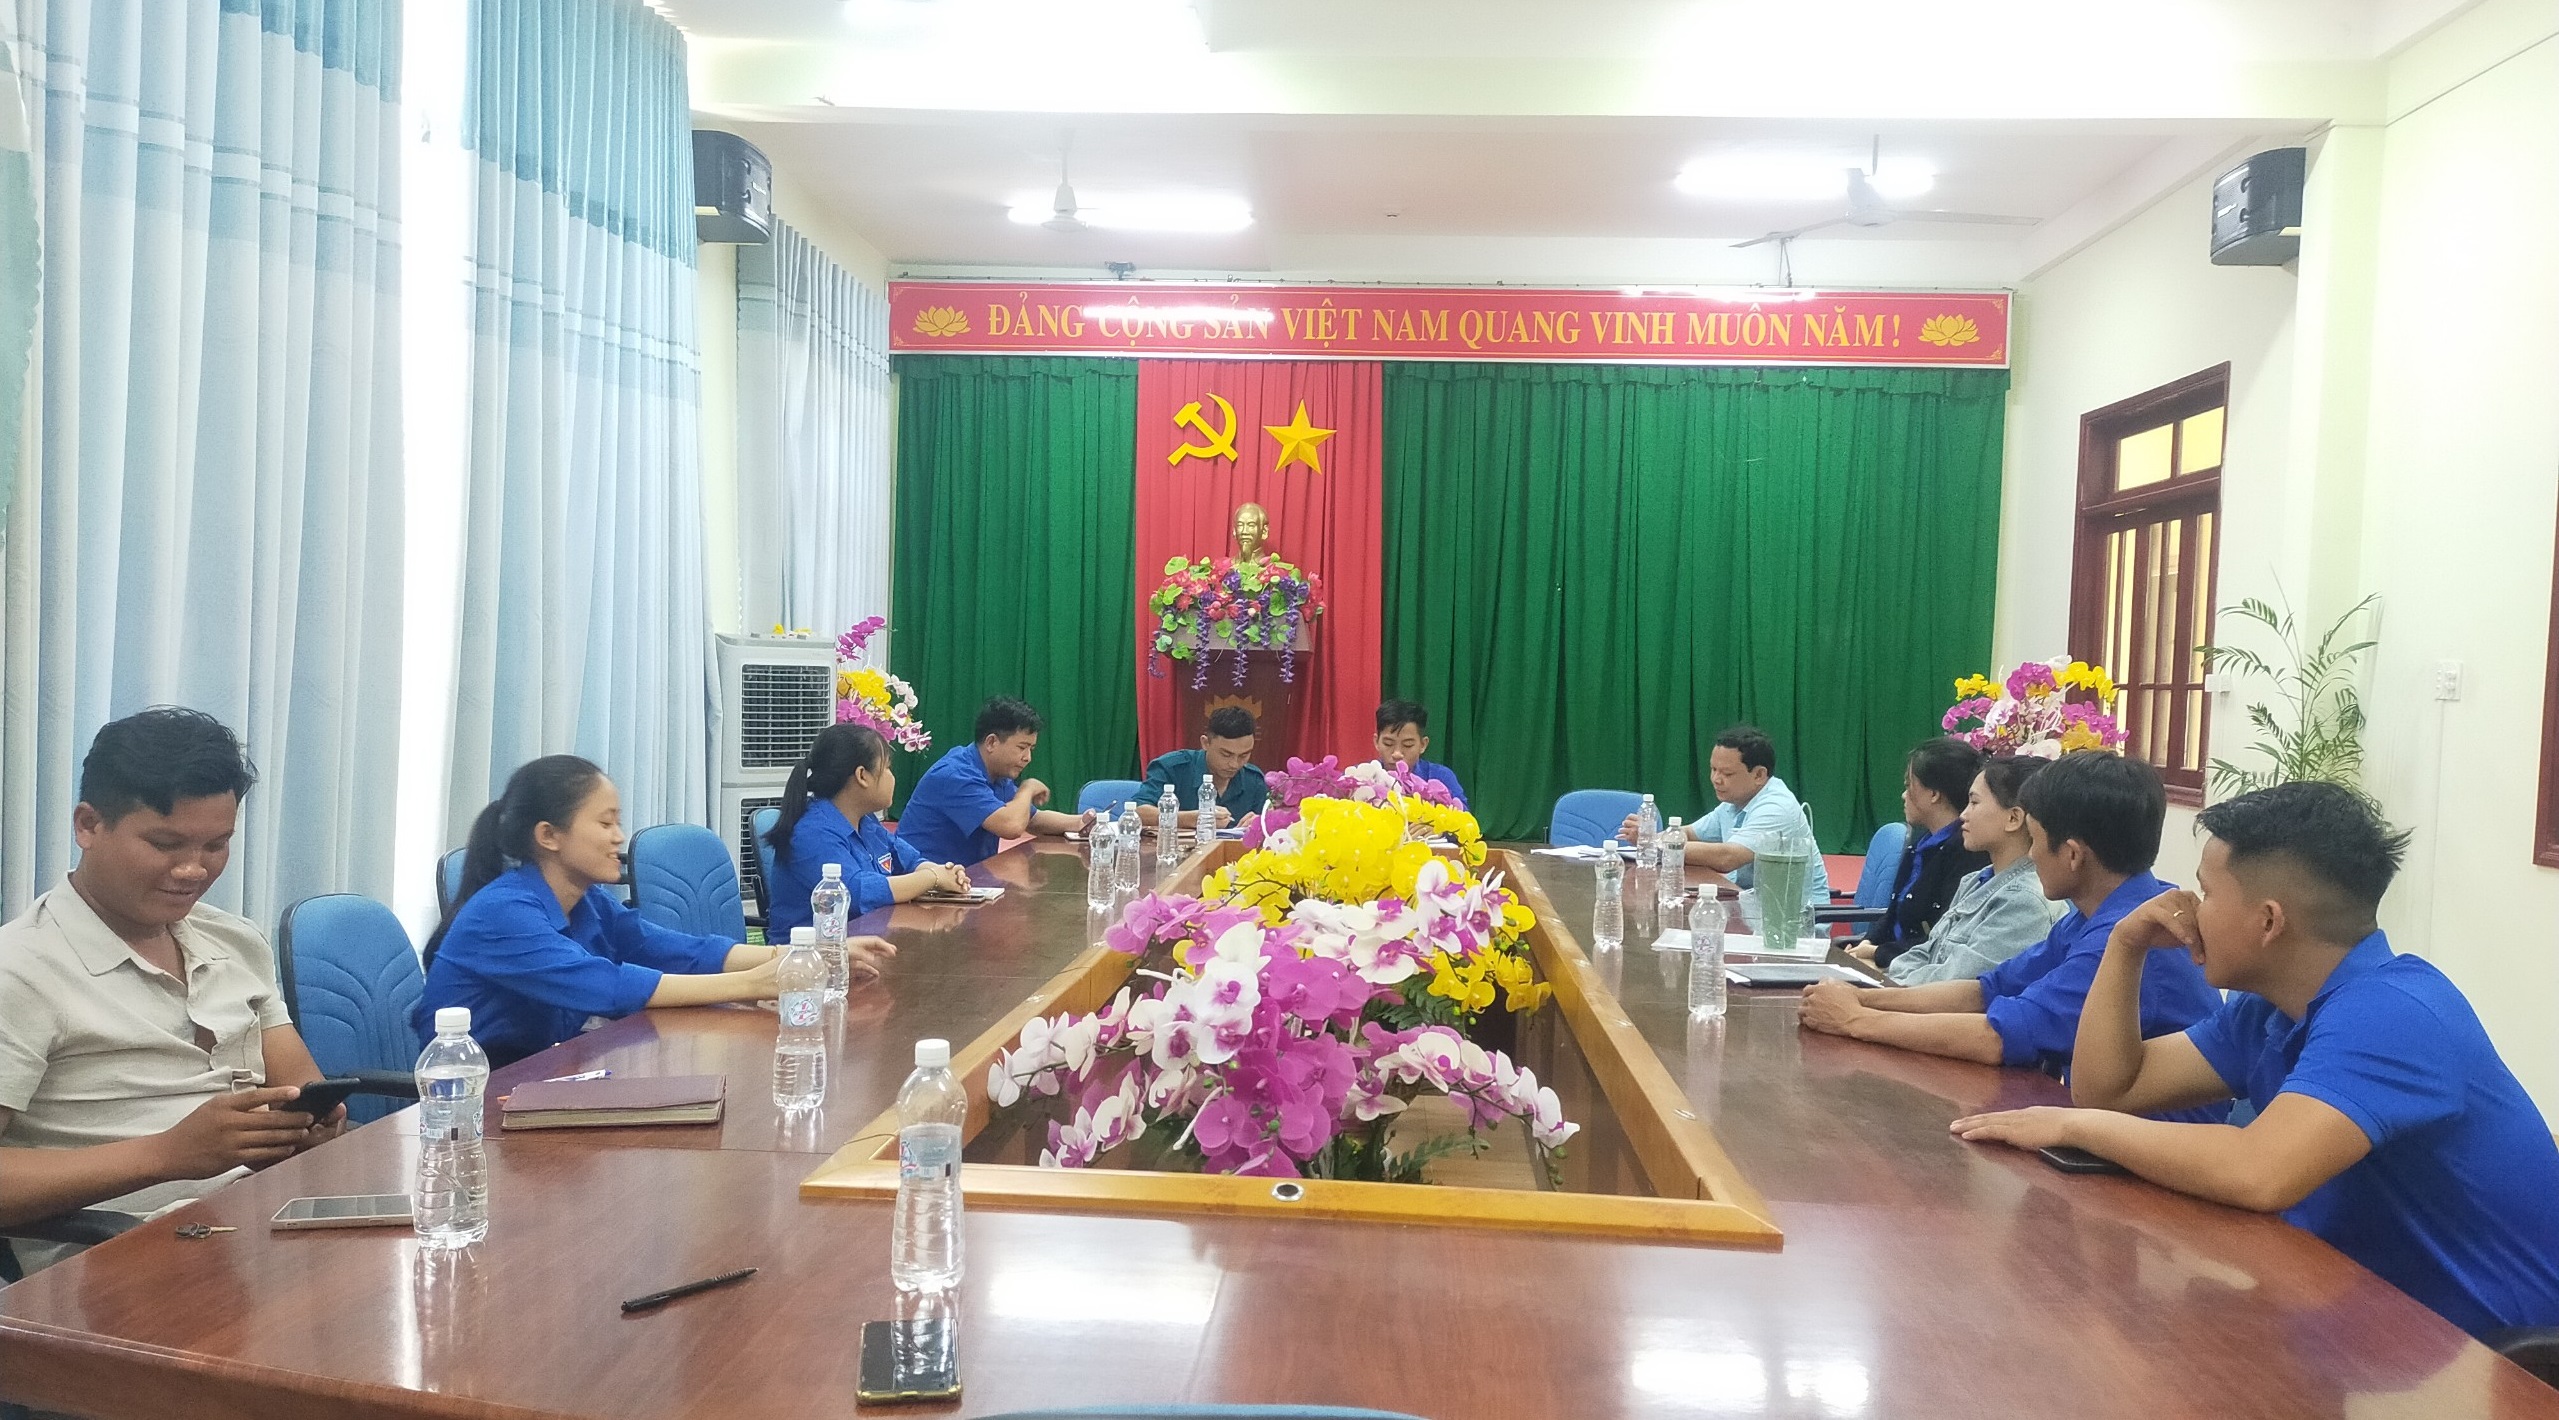 Đoàn xã Sơn Thành bầu bổ sung Phó Bí thư Đoàn TNCS Hồ Chí Minh xã Sơn Thành, nhiệm kỳ 2022 - 2027